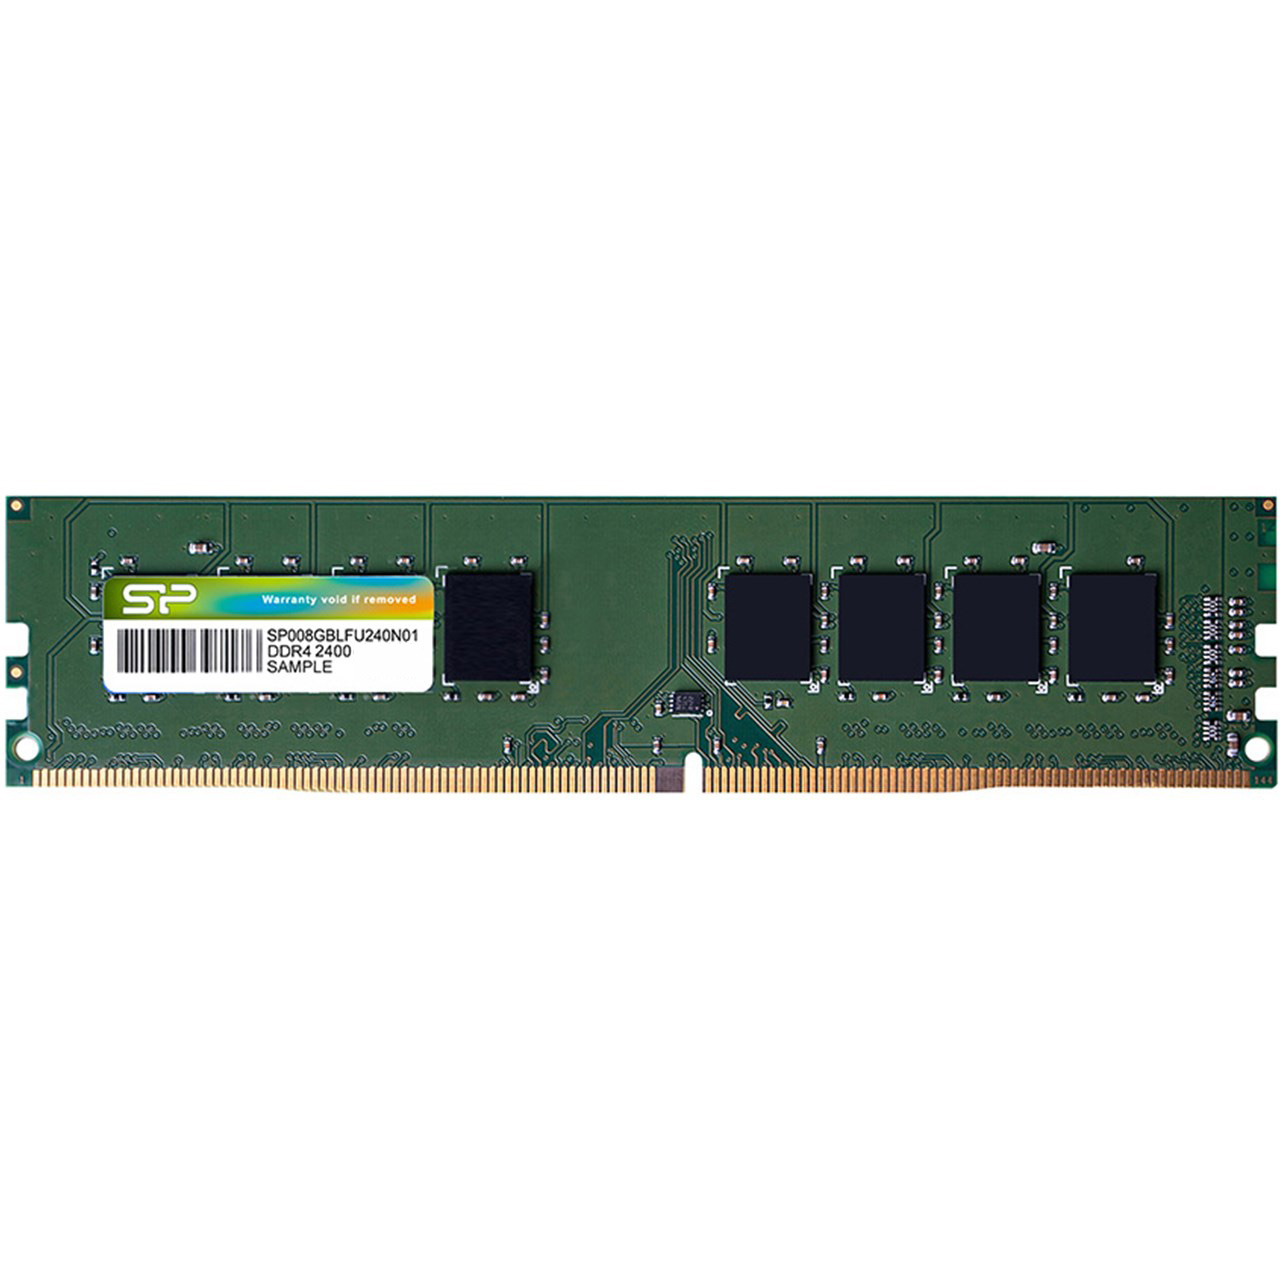 رم دسکتاپ DDR4 تک کاناله 2400 مگاهرتز CL17 سیلیکون پاور ظرفیت 8 گیگابایت